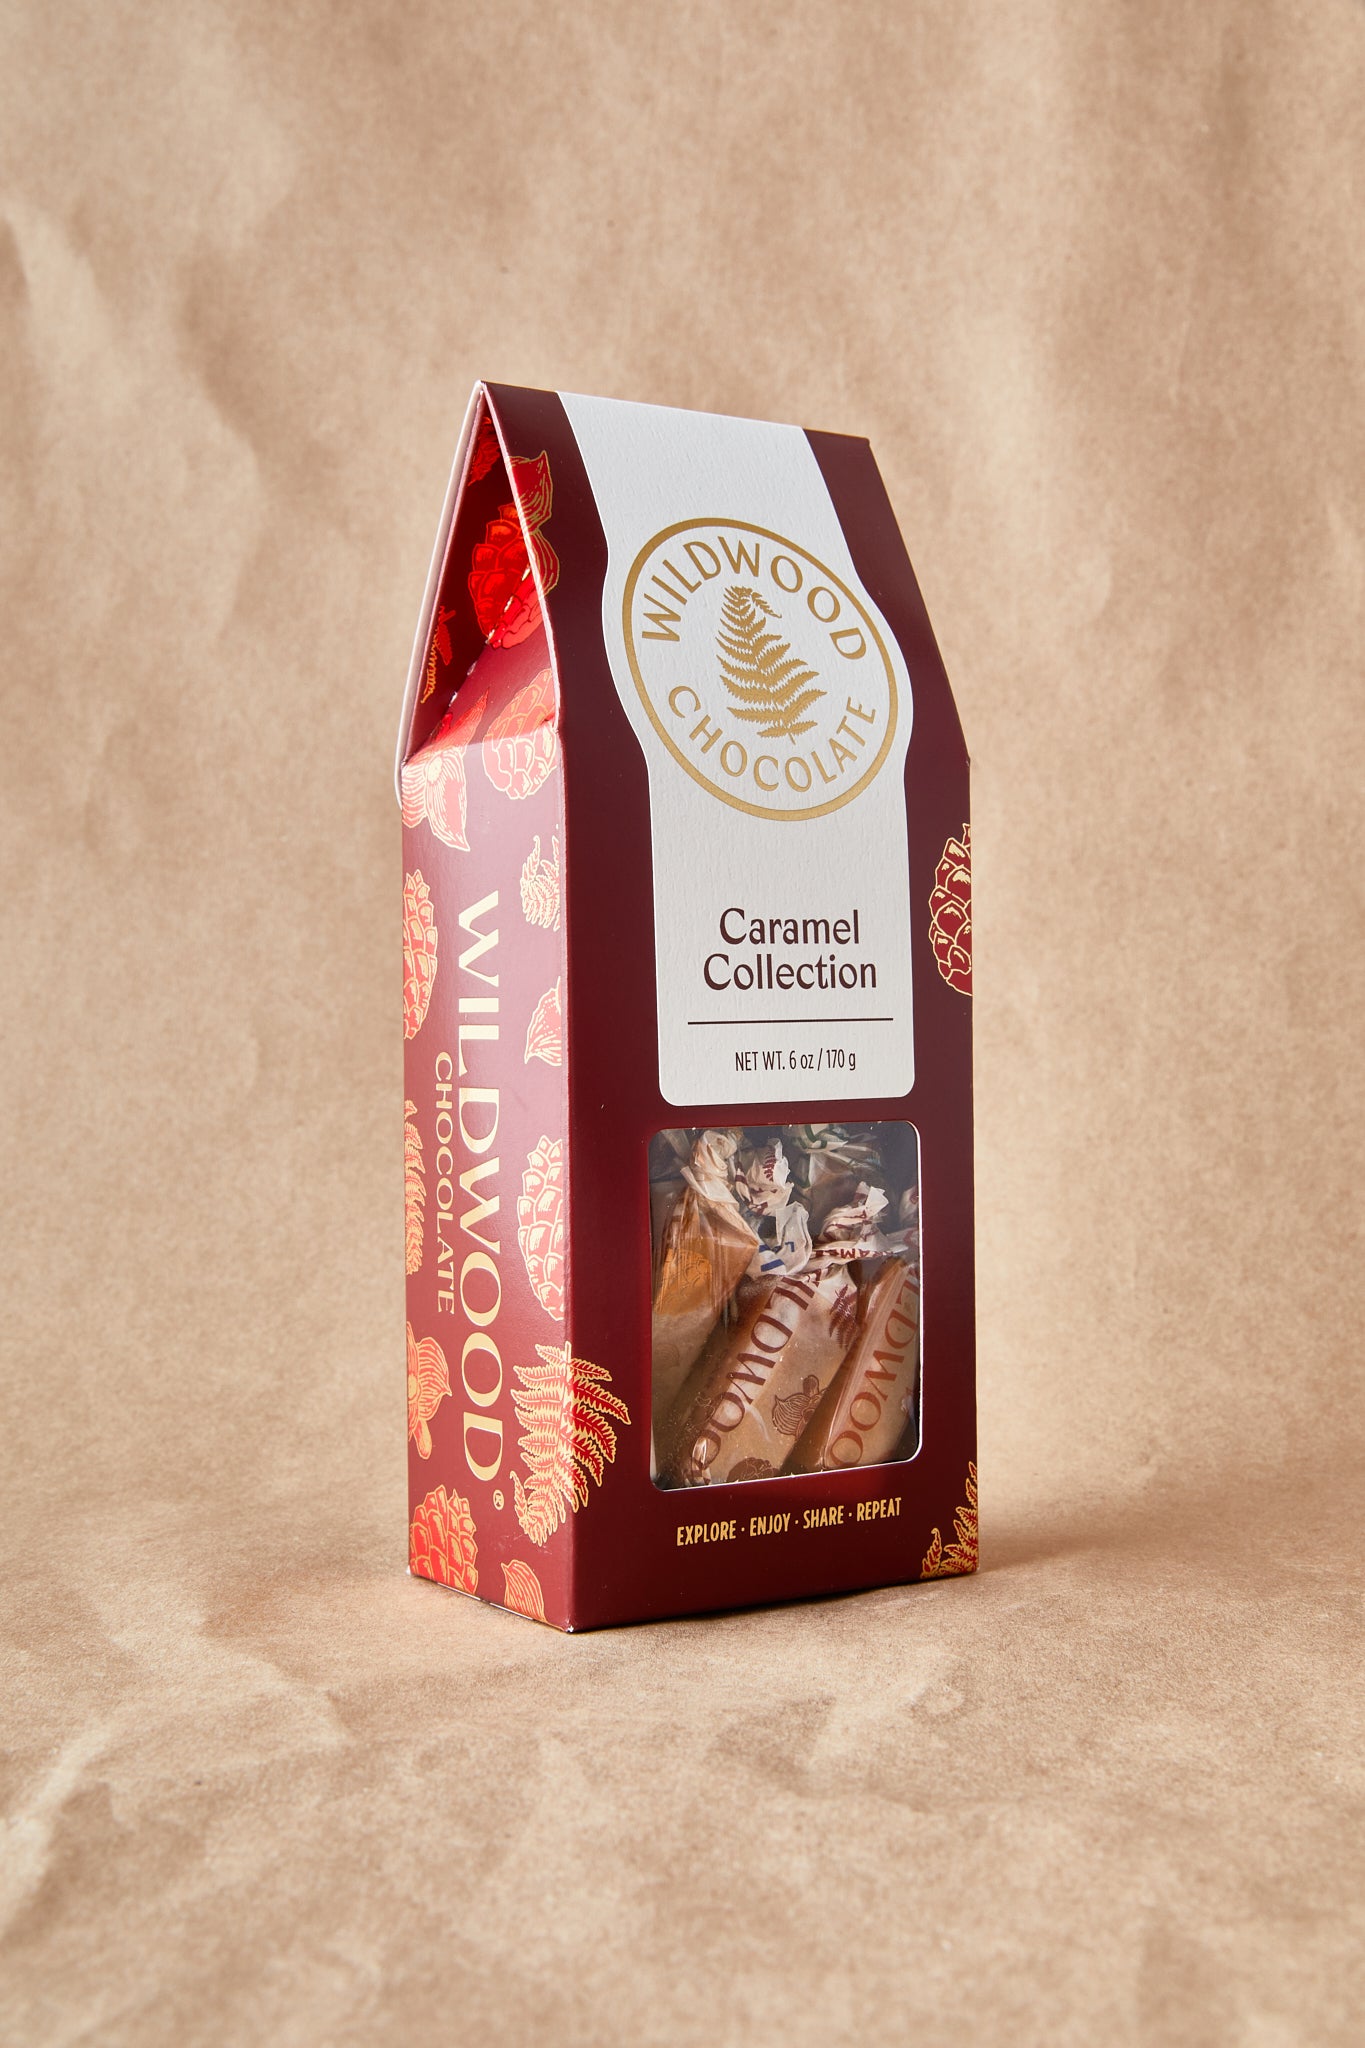 Caramel Collection Box